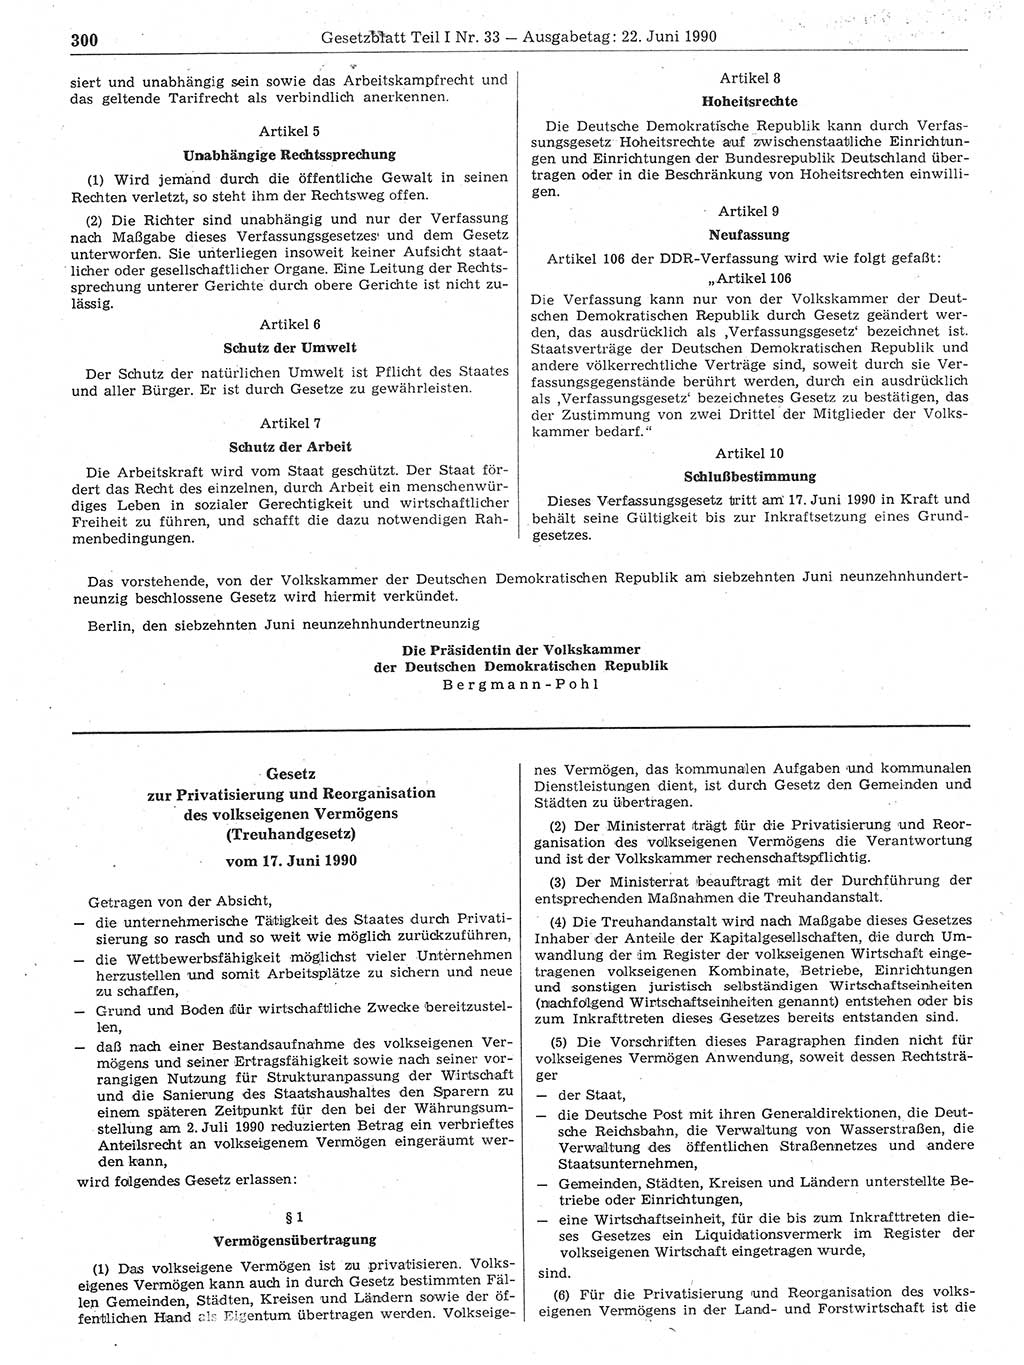 Gesetzblatt (GBl.) der Deutschen Demokratischen Republik (DDR) Teil Ⅰ 1990, Seite 300 (GBl. DDR Ⅰ 1990, S. 300)